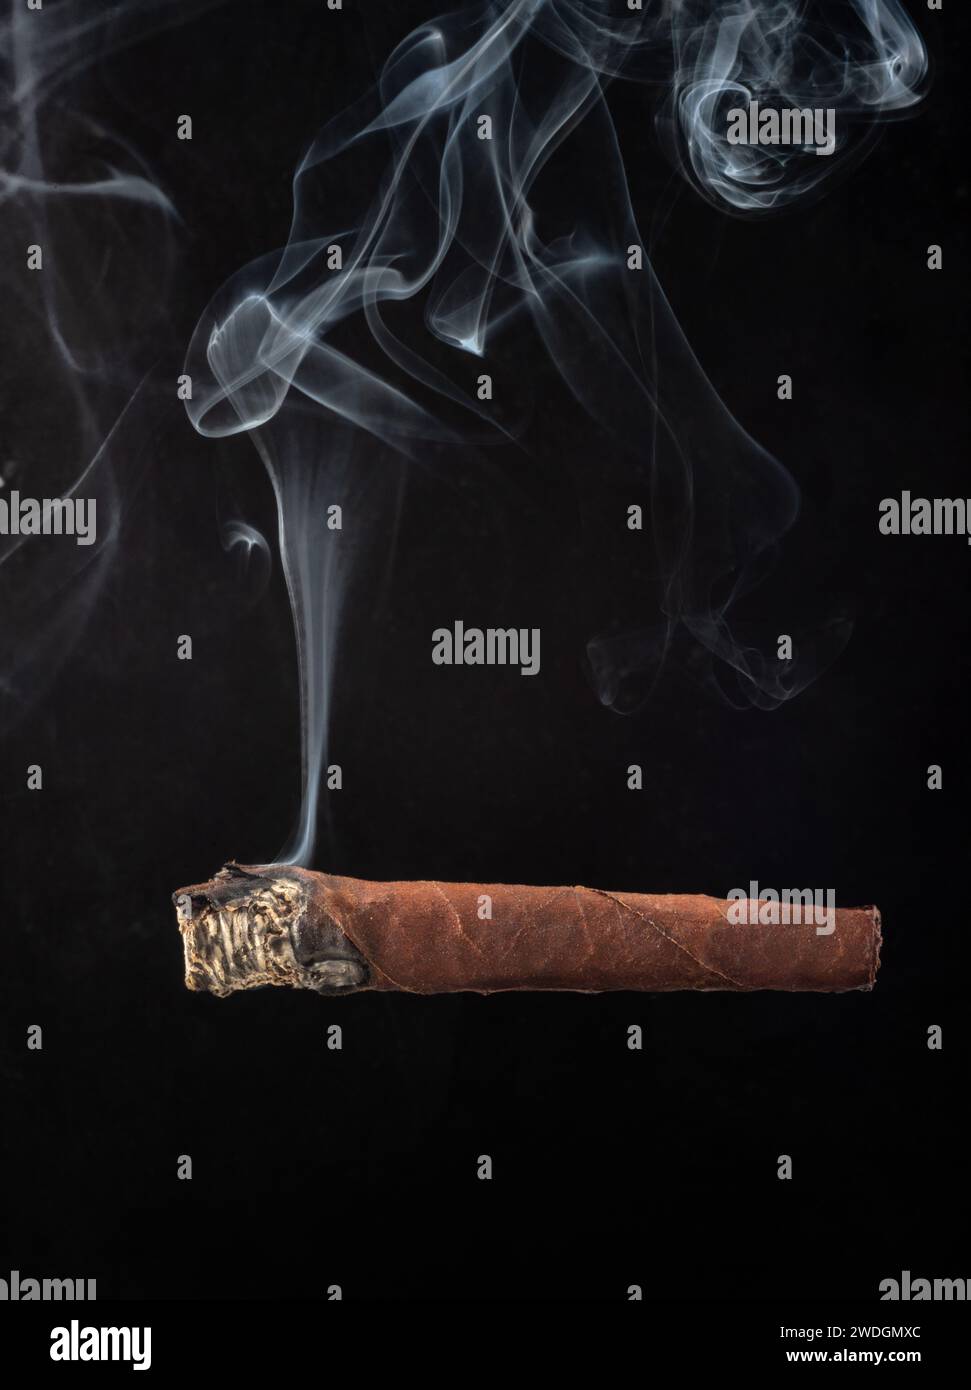 Cigare brûlant avec fumée blanche sur fond noir - Toscano cigare brûlant isolé sur noir Banque D'Images